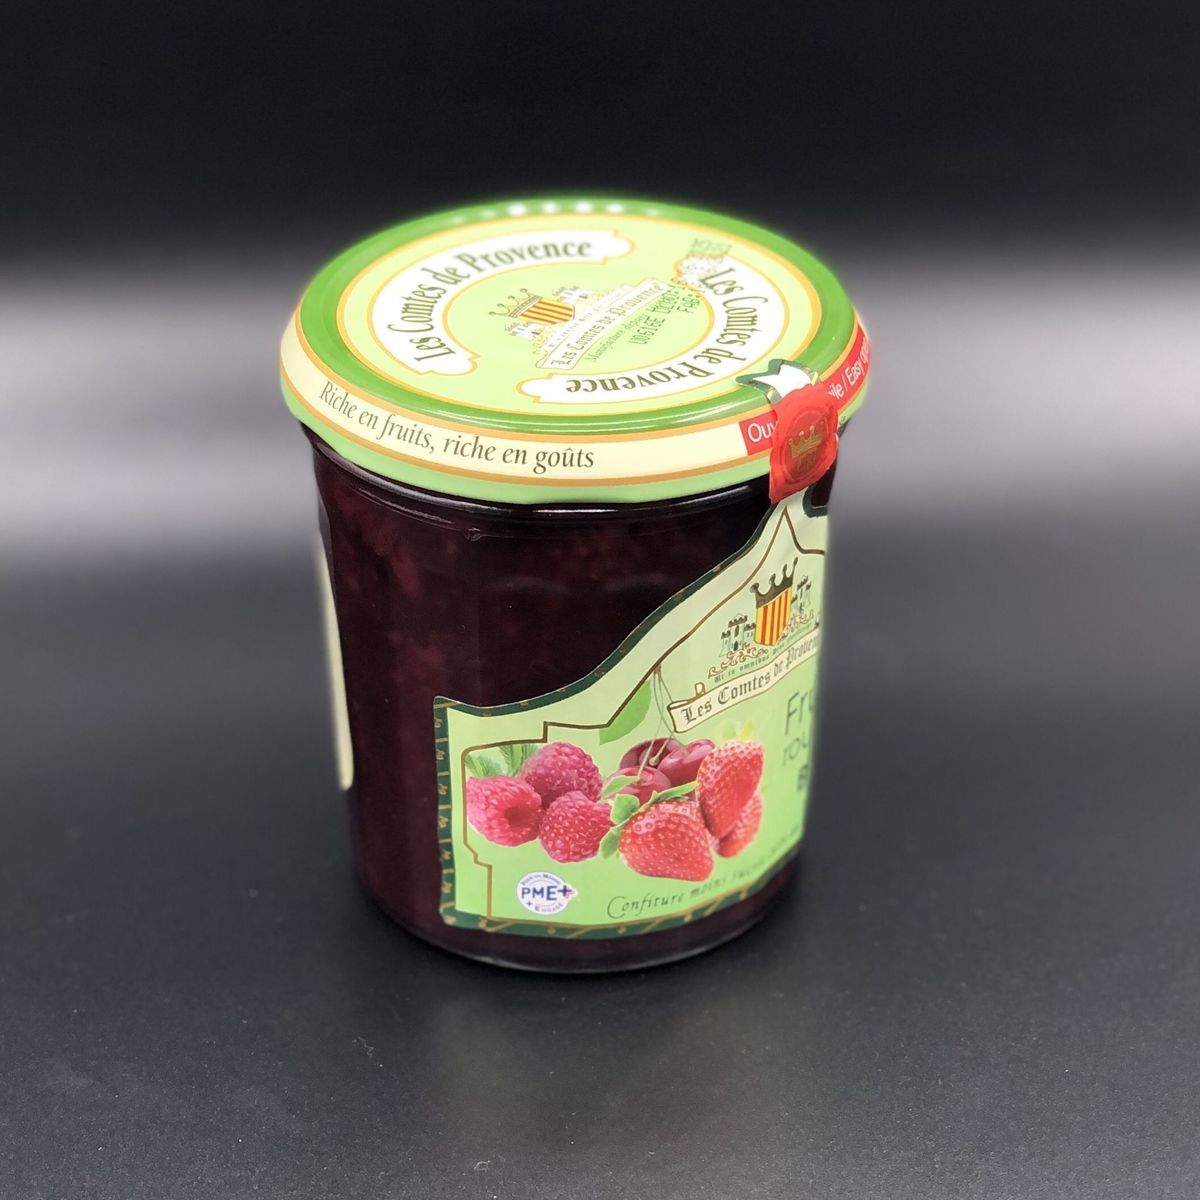 Джем Les Comtes de Provence из красных ягод (клубника, вишня, малина, красная смородина) Organic 350гр, 64% фруктов